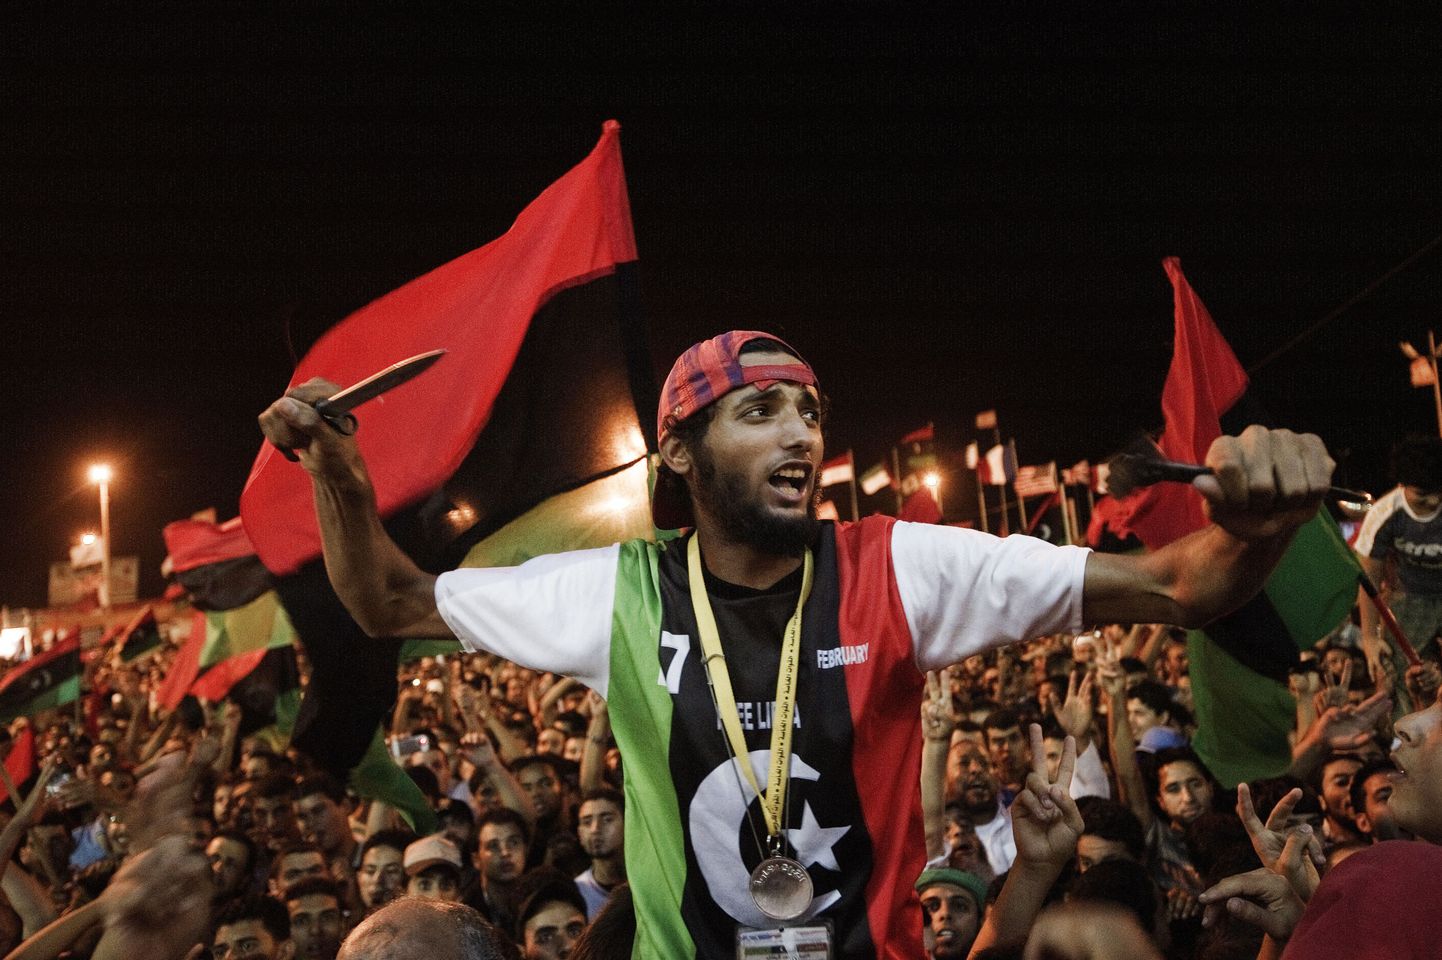 Liibüa revolutsioon jätkub ka pärast Gaddafi kukutamist